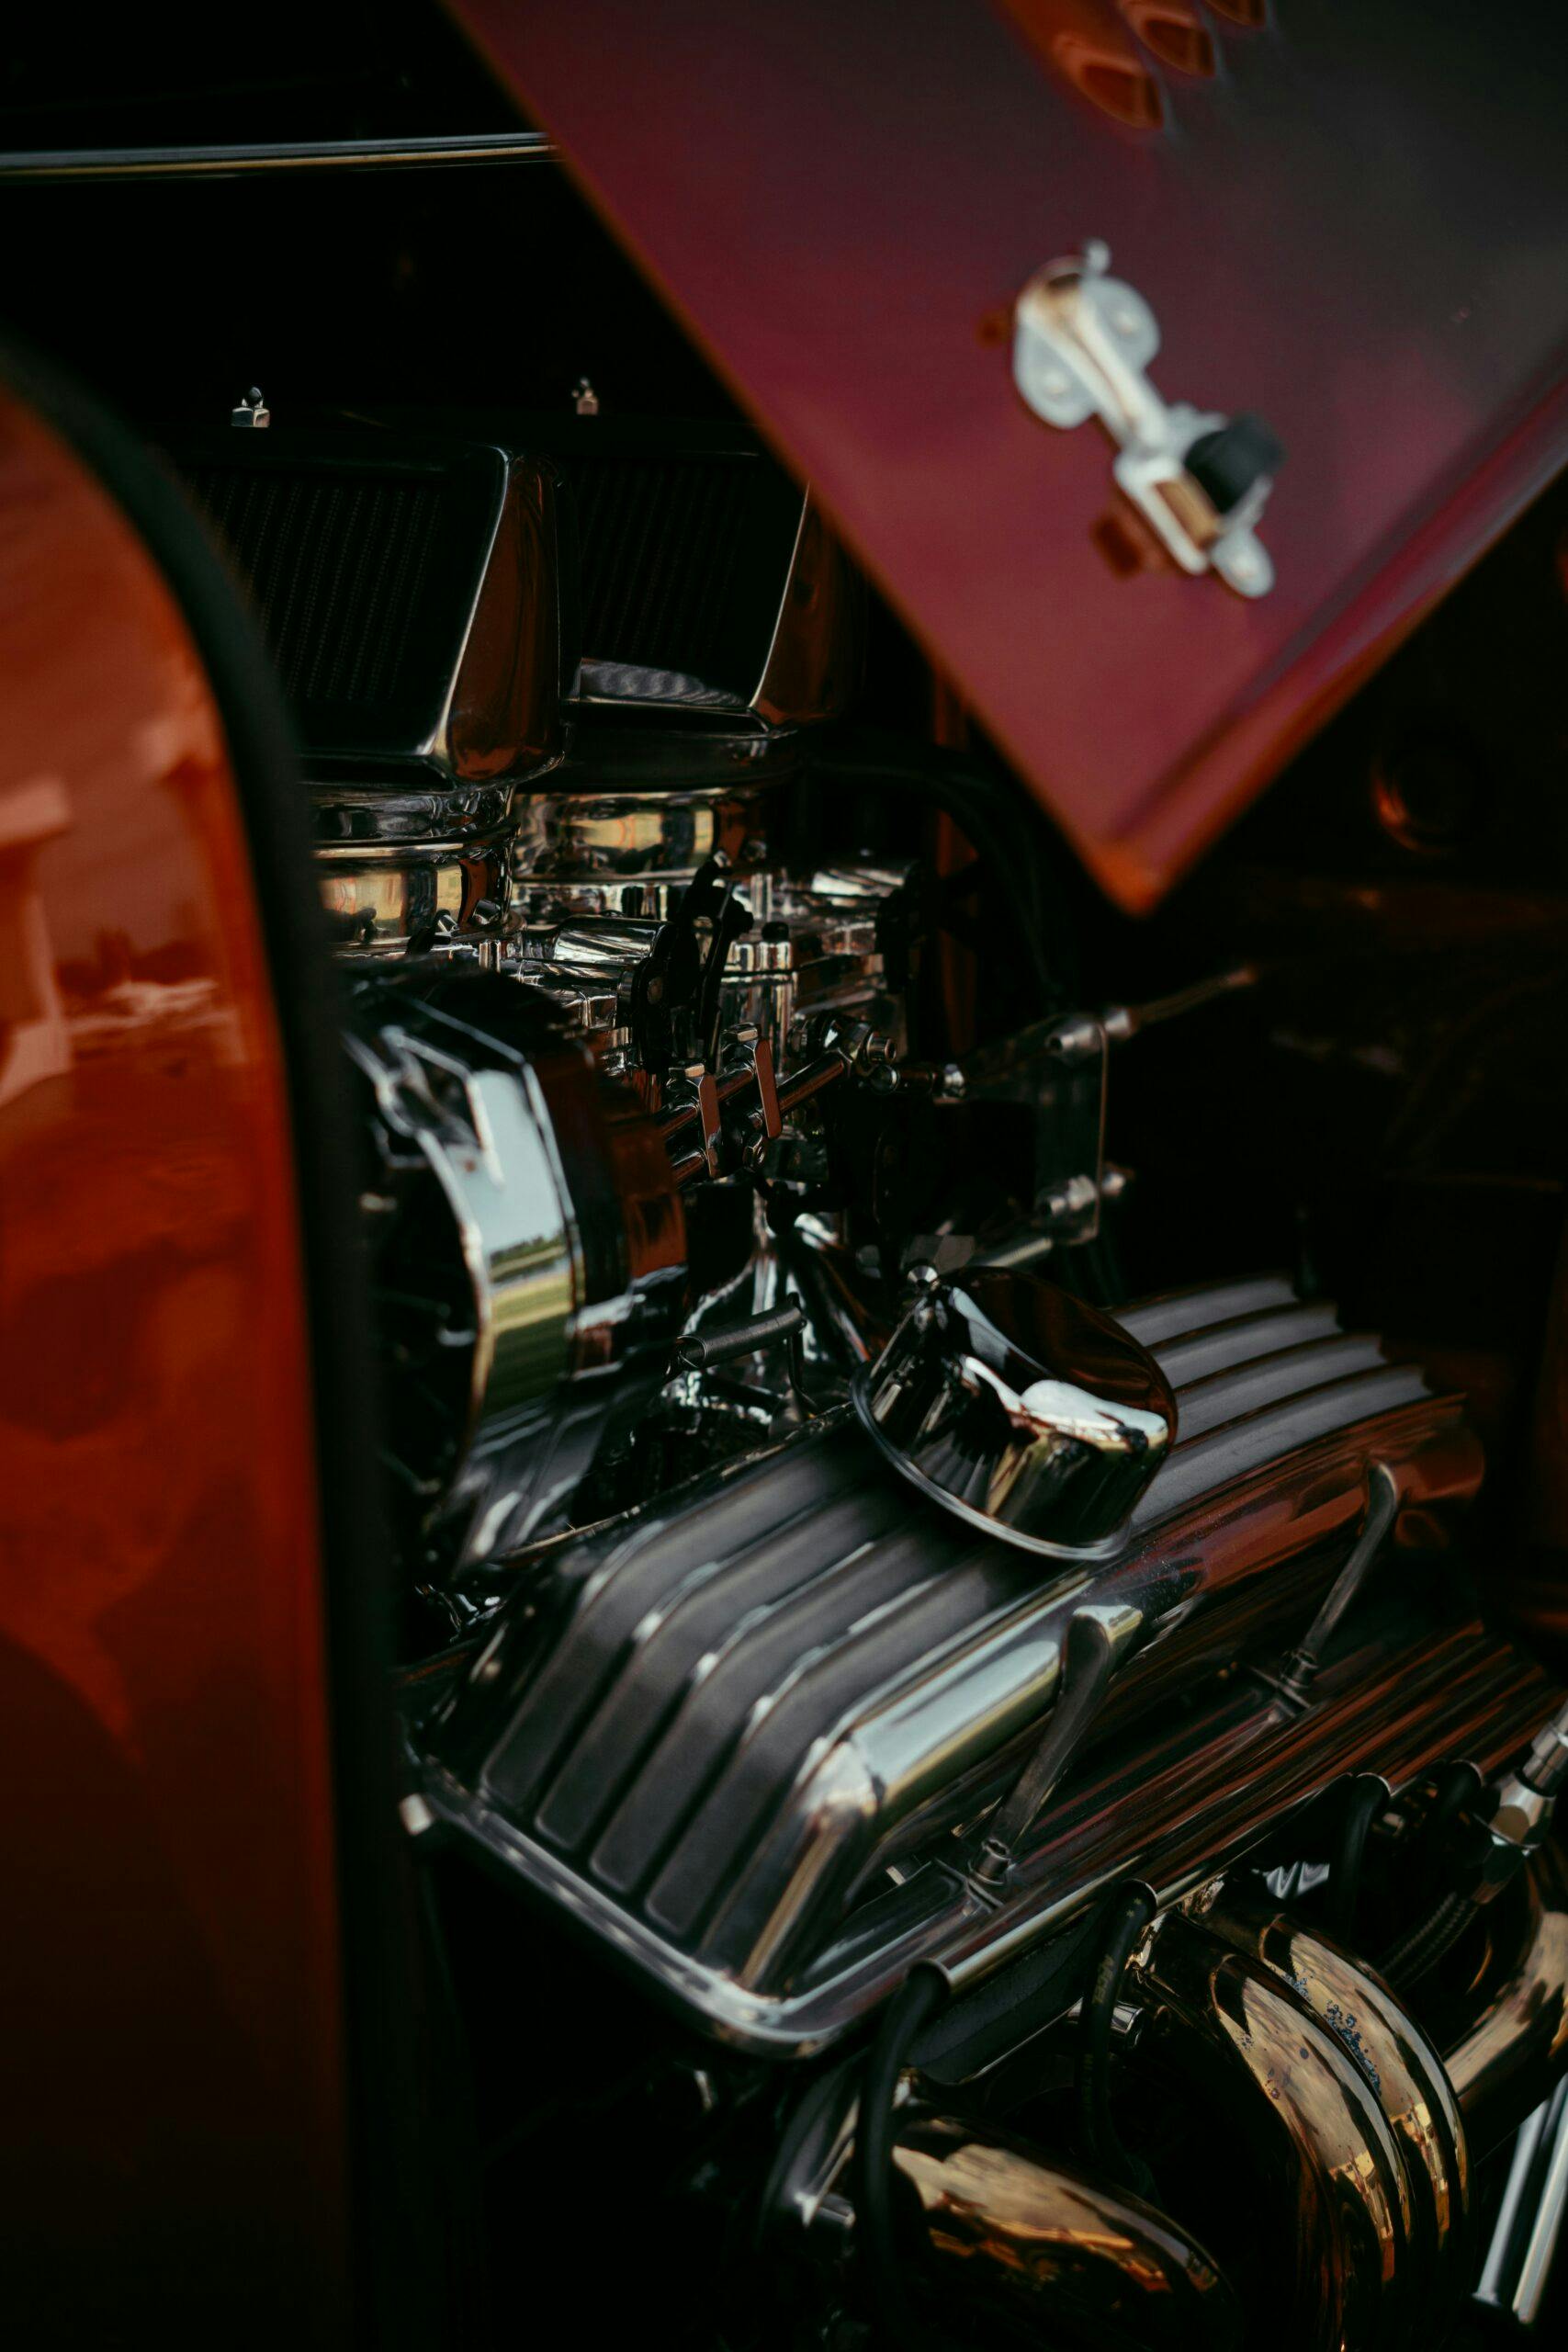 Vintage Car Engine chrome closeup